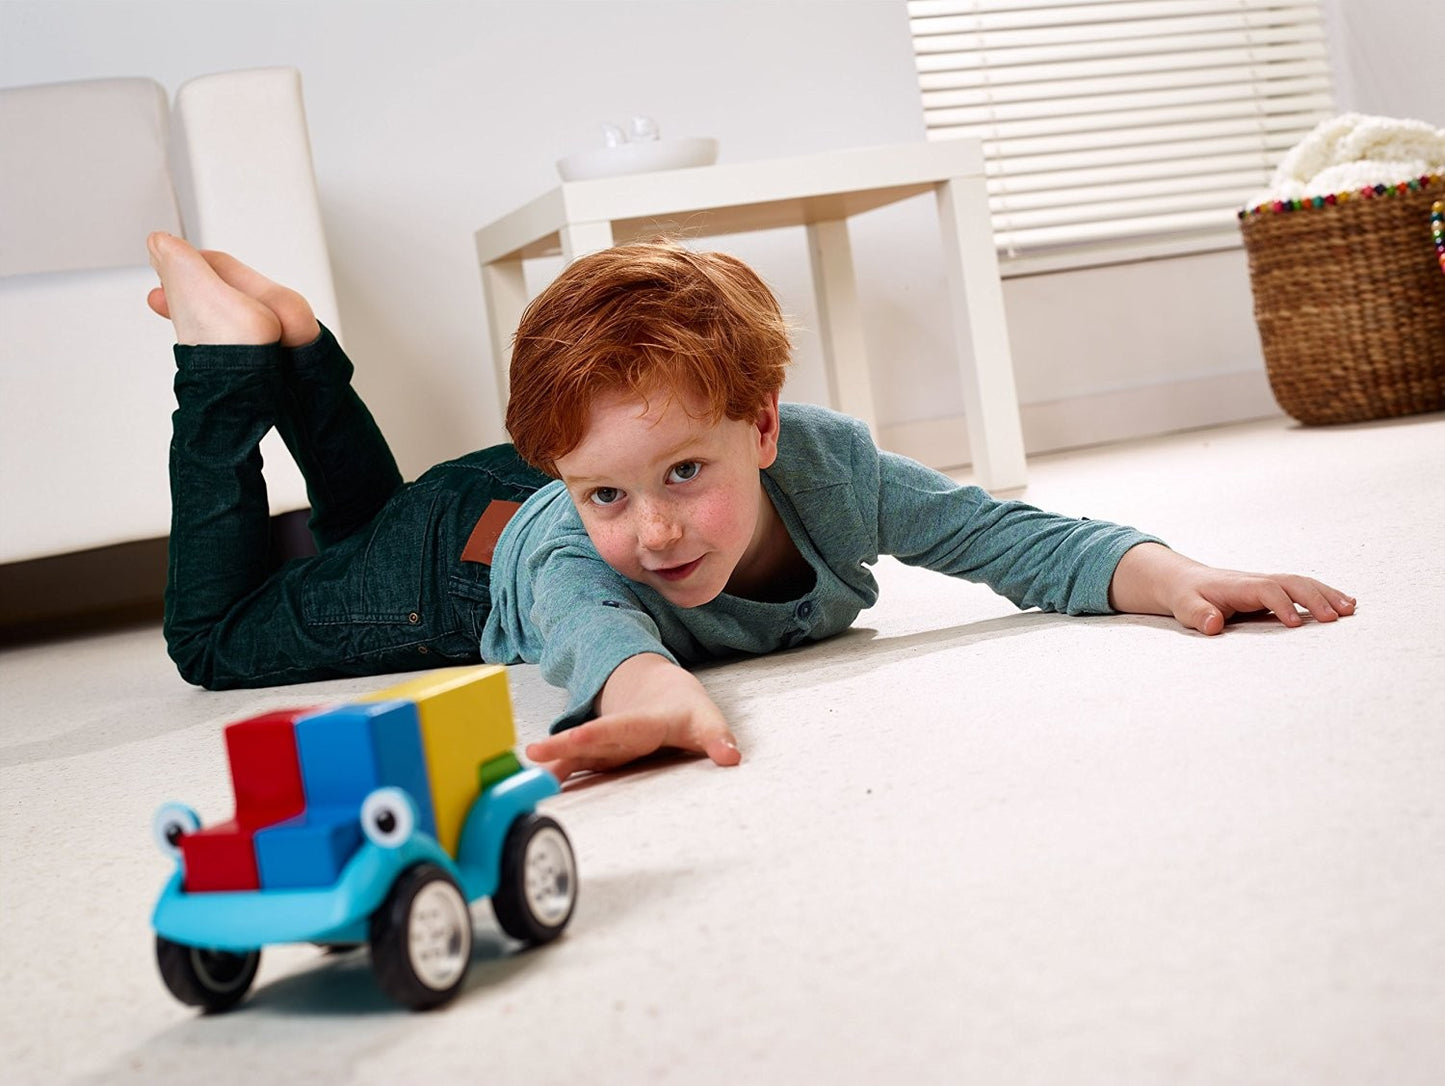 Smartgames: Smartcar 5x5 kinderspel